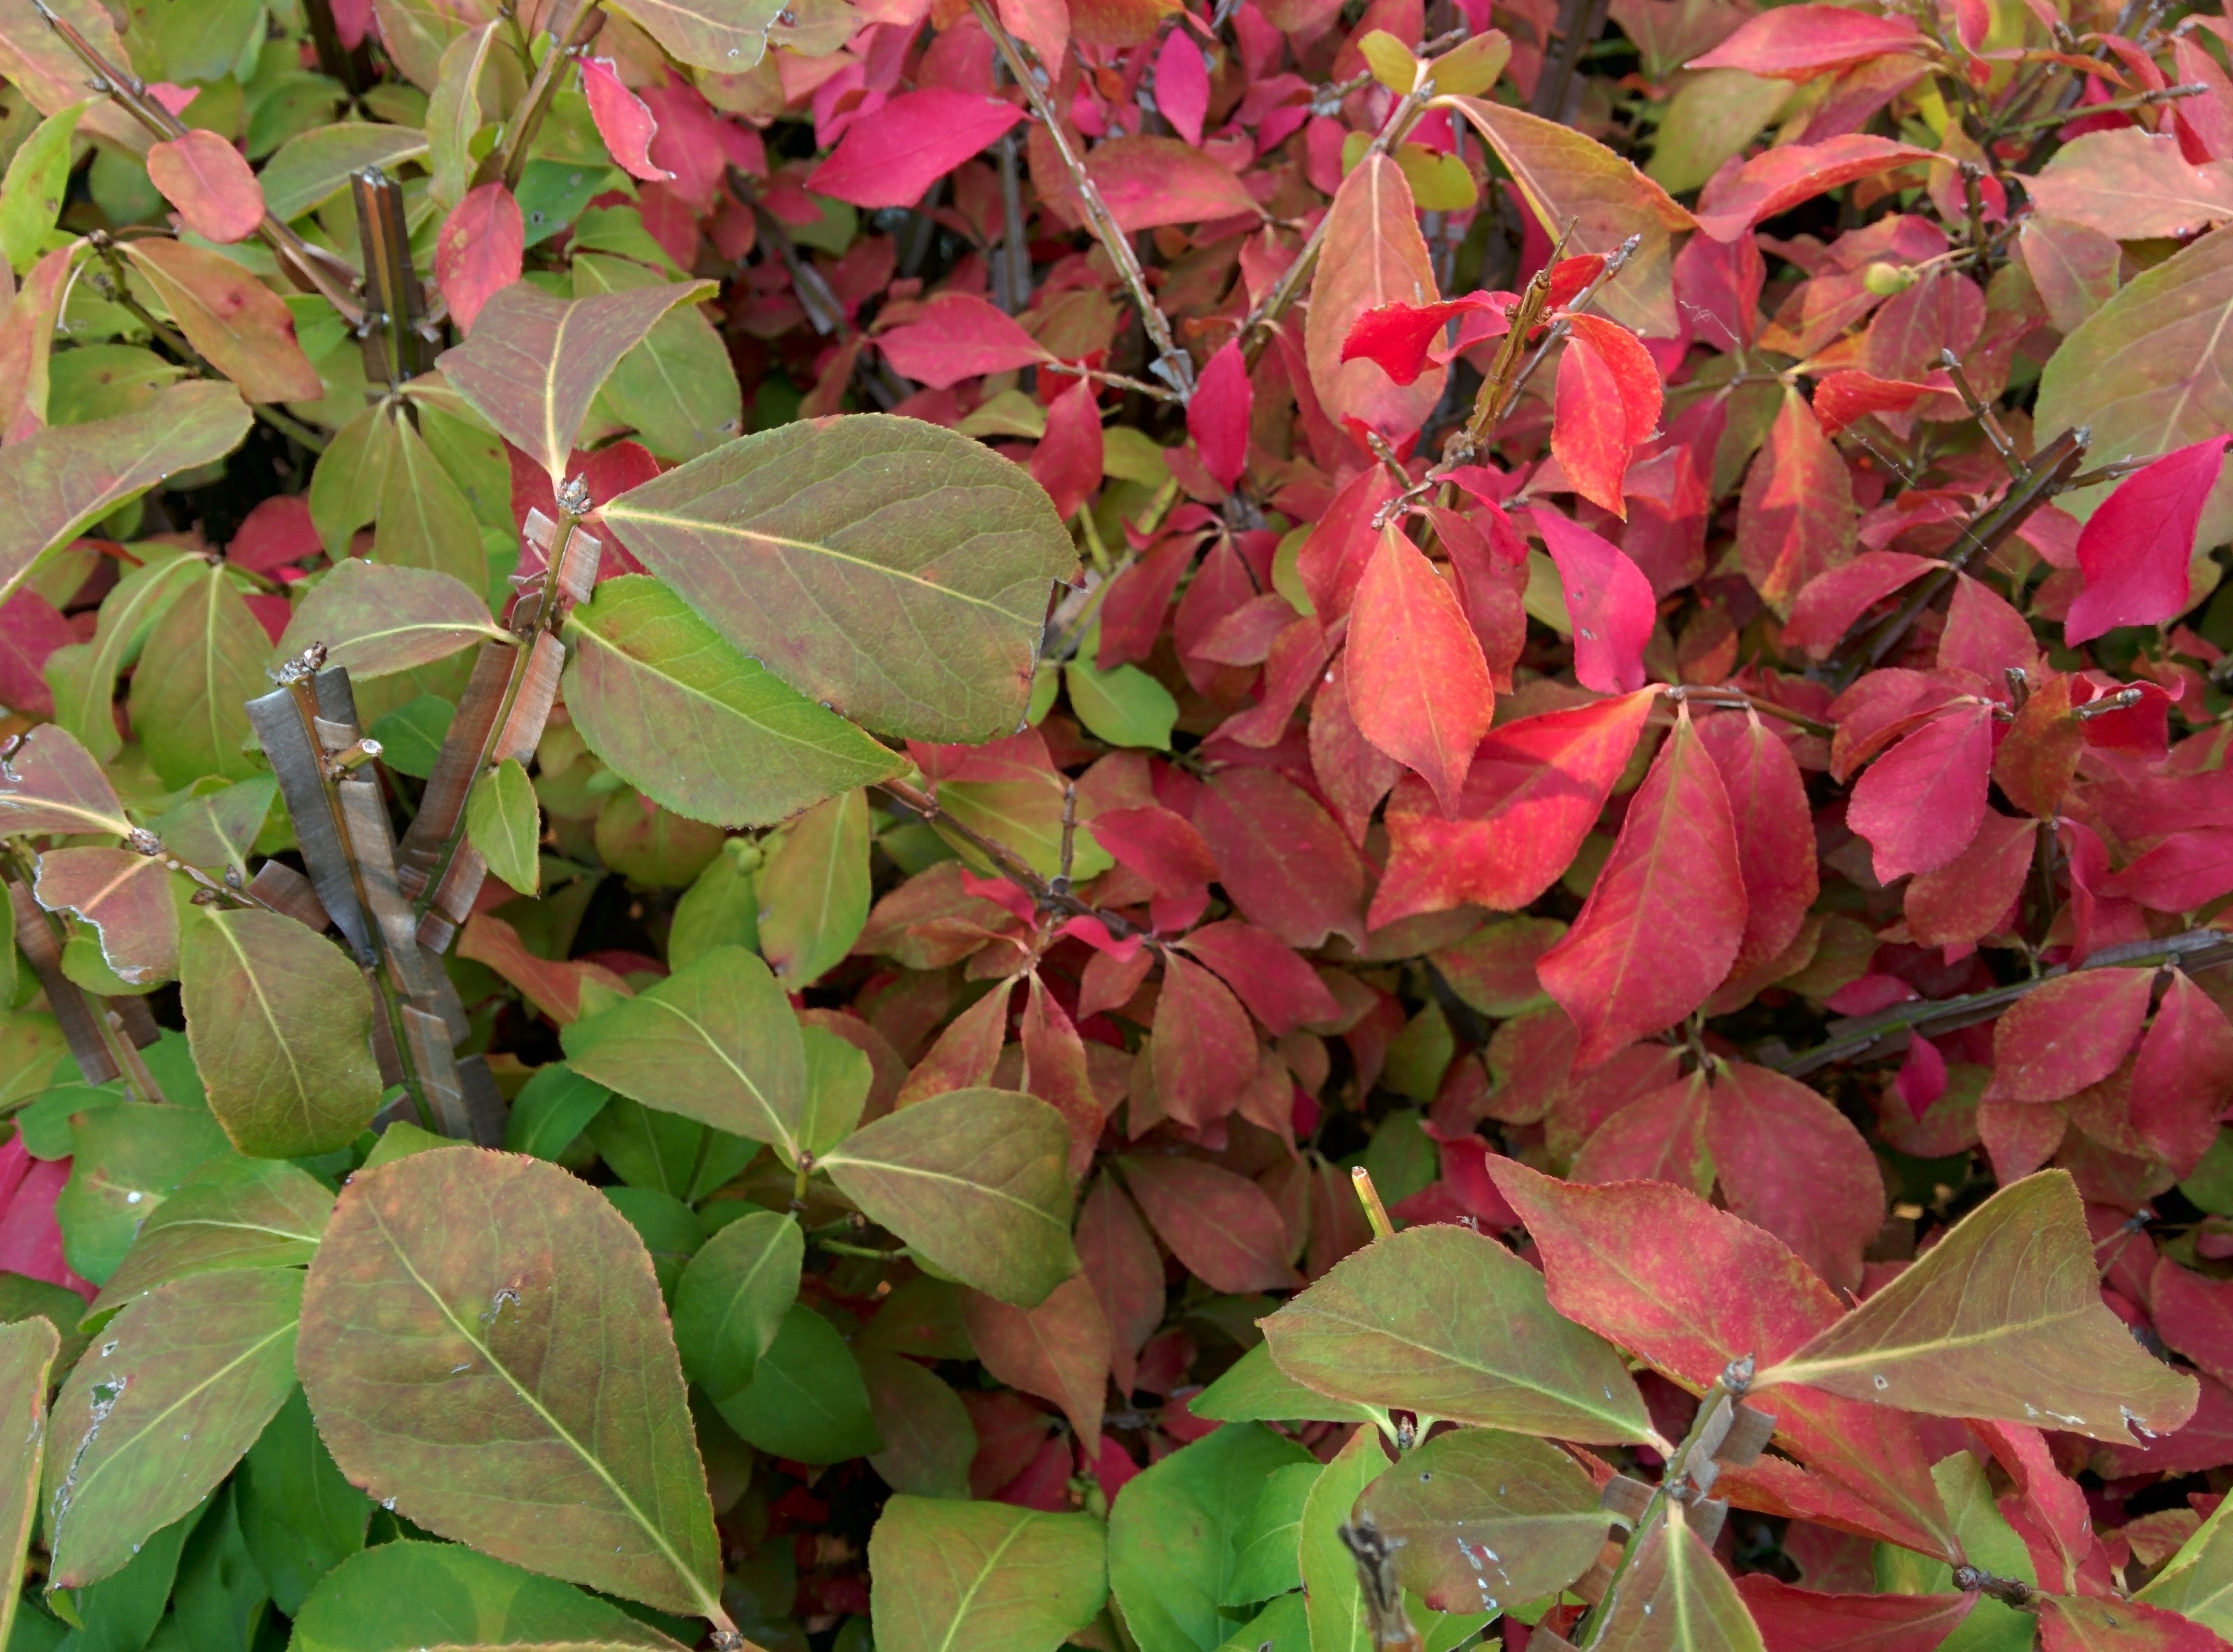 IMG_20151006_164818.jpg 붉게 단풍이 물드는 가을의 화살나무